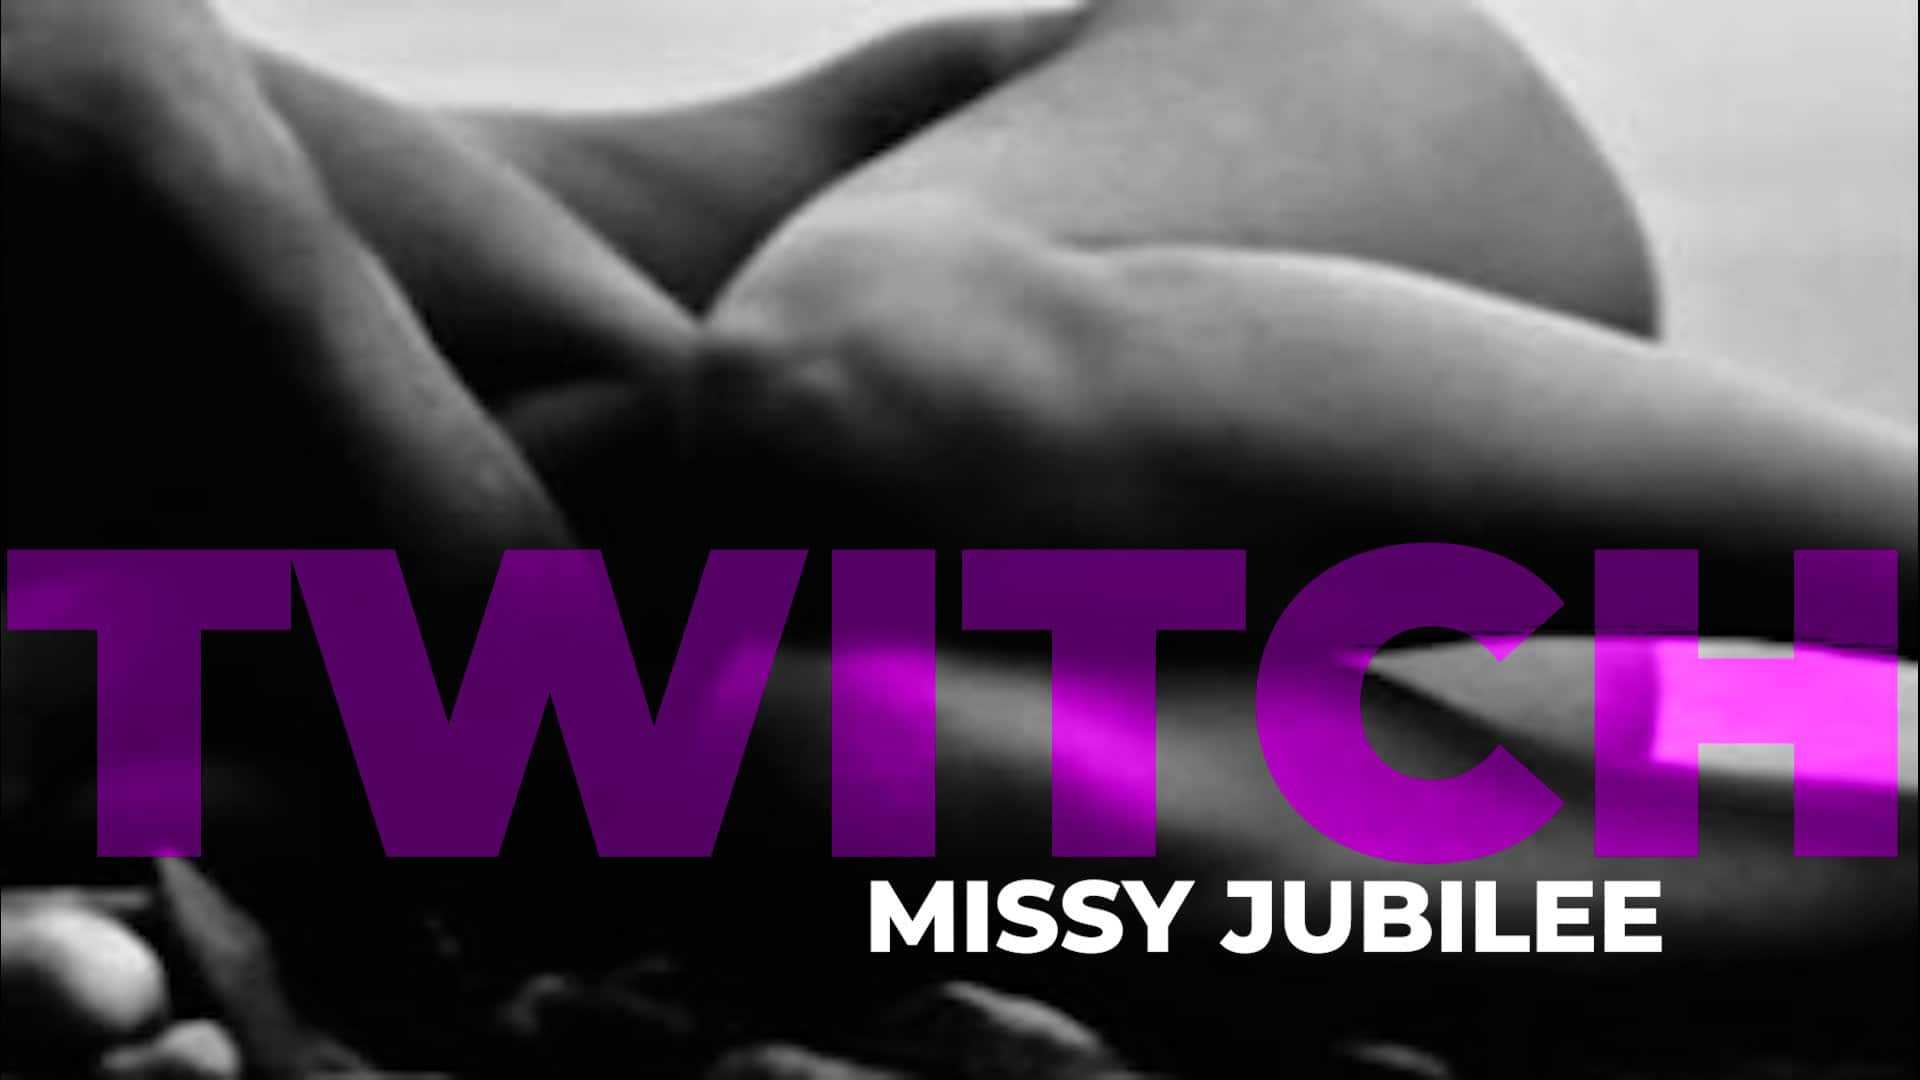 Missy Jubilee 118 TWITCH film release poster